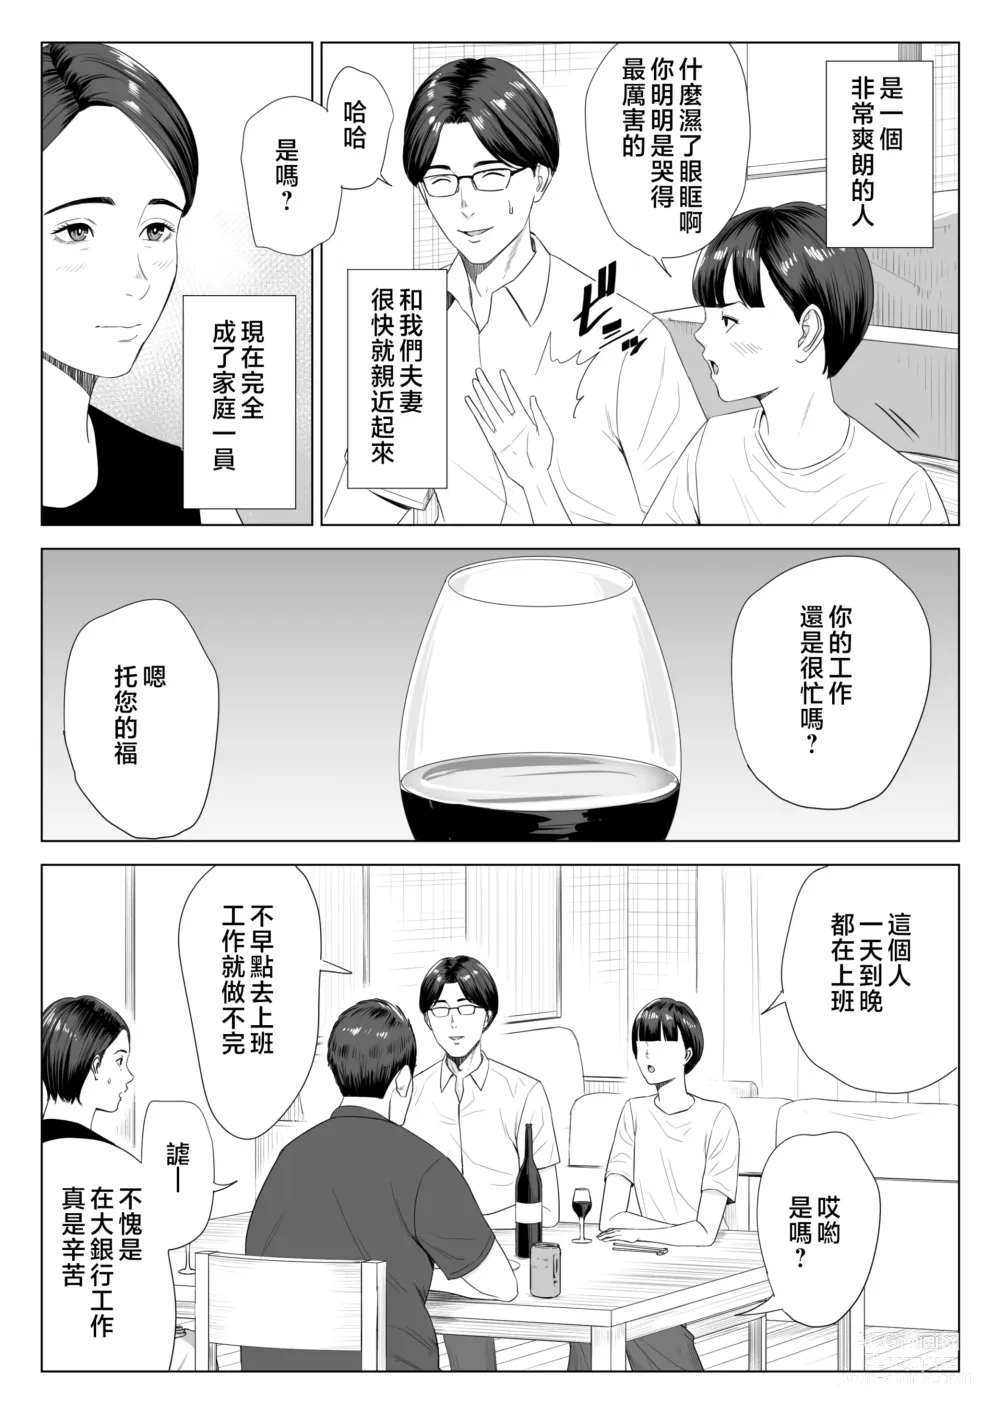 Page 4 of doujinshi Gibo no Tsukaeru Karada.